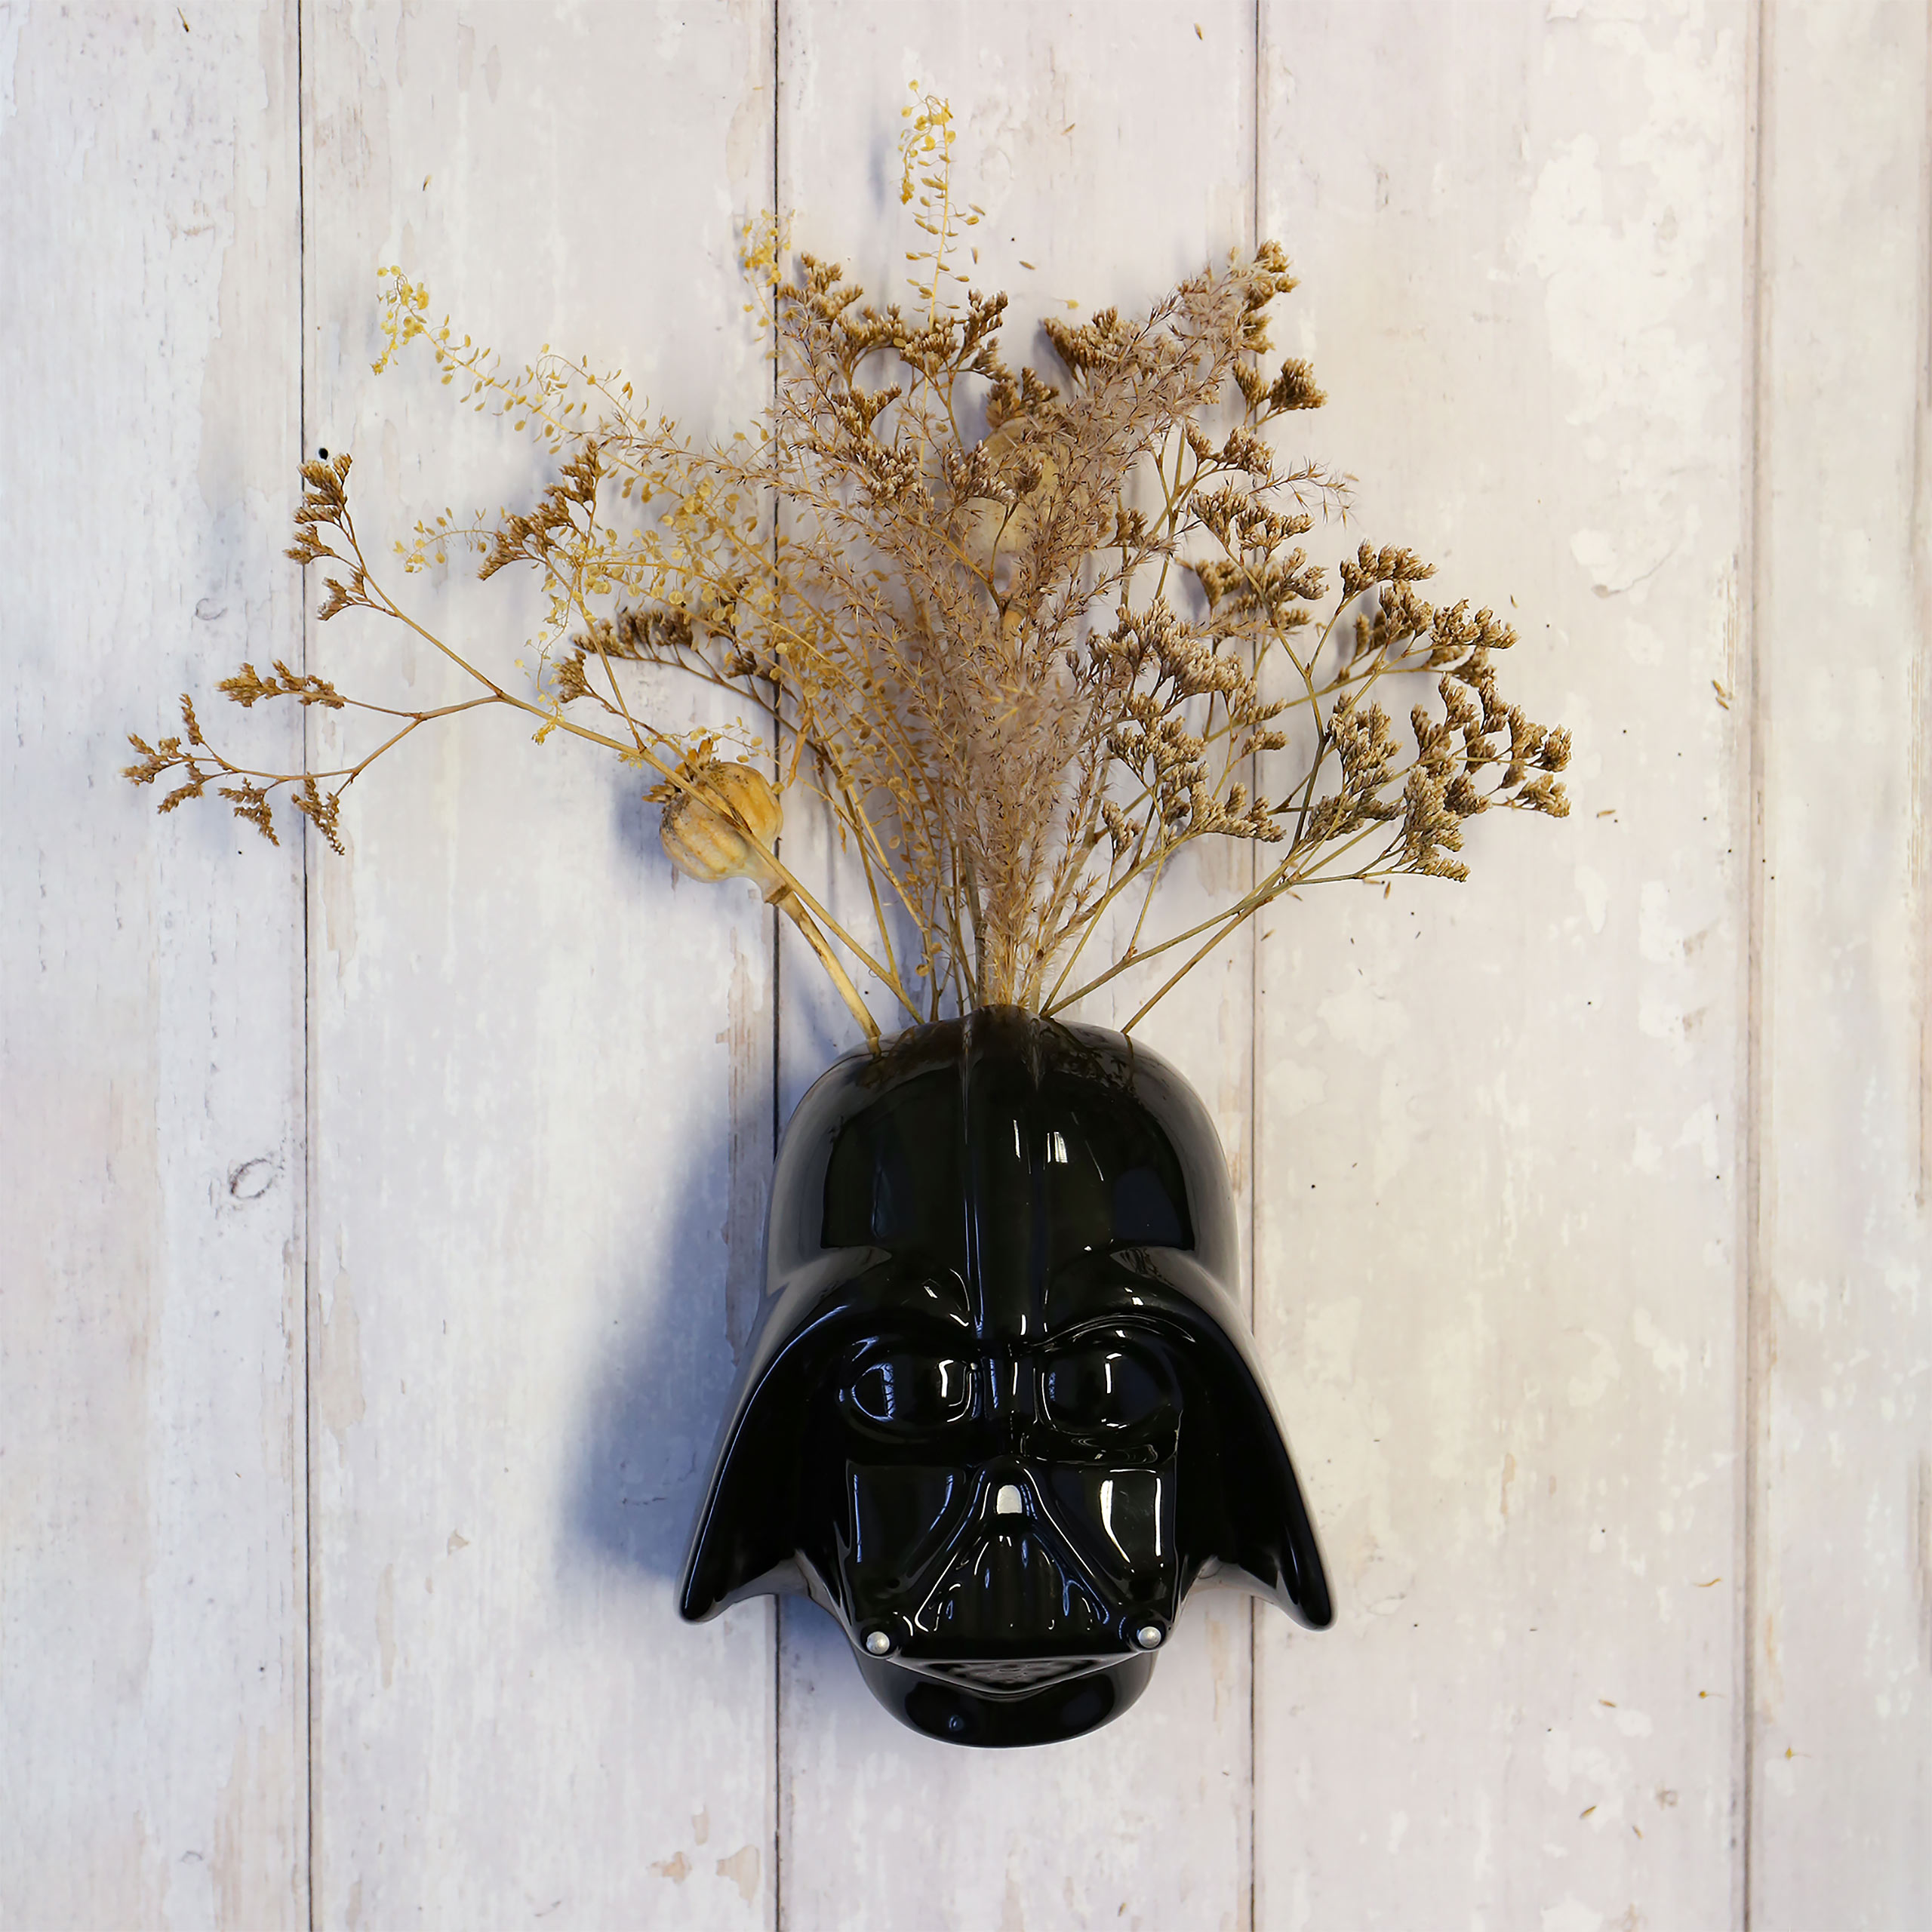 Star Wars - Darth Vader Vase